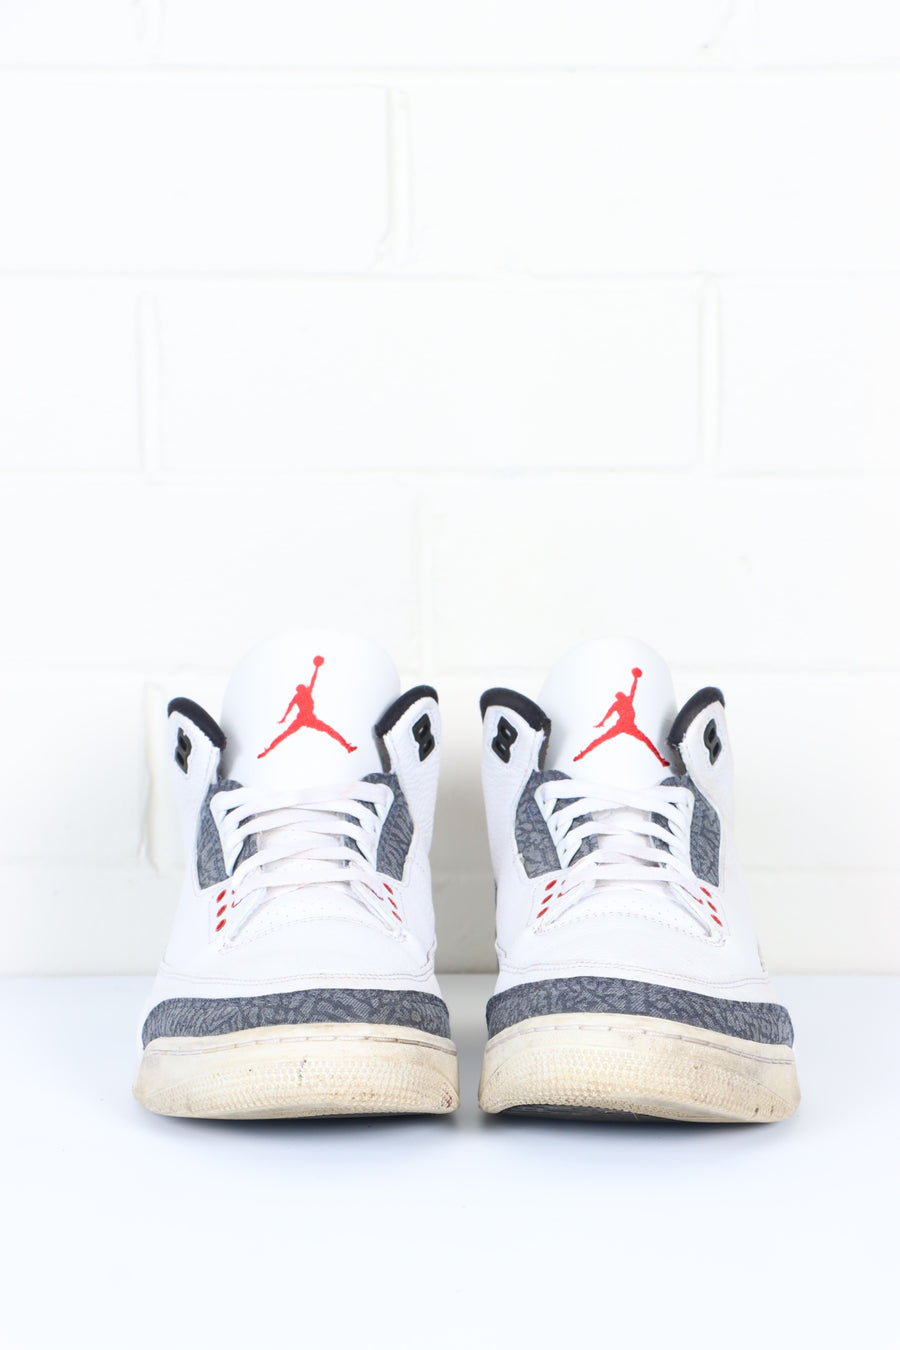 NIKE Air Jordan 3 Retro 'Fire Red Denim' Sneakers (10)